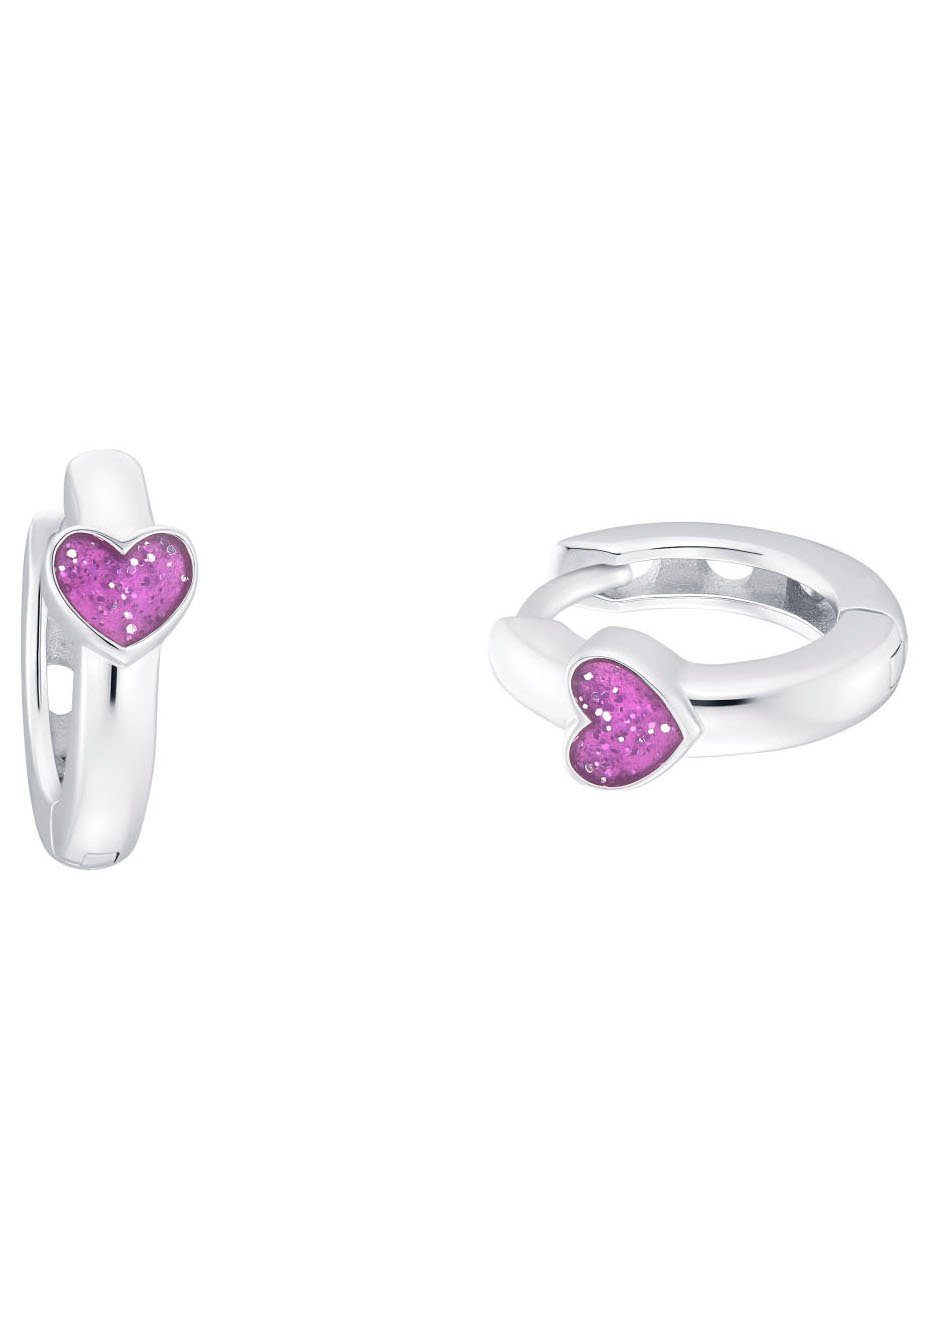 für Paar Creolen Prinzessin Heart, Creolen 2036442, von Purple Marke mit Lillifee Herz-Motiv Mädchen der Lillifee Prinzessin